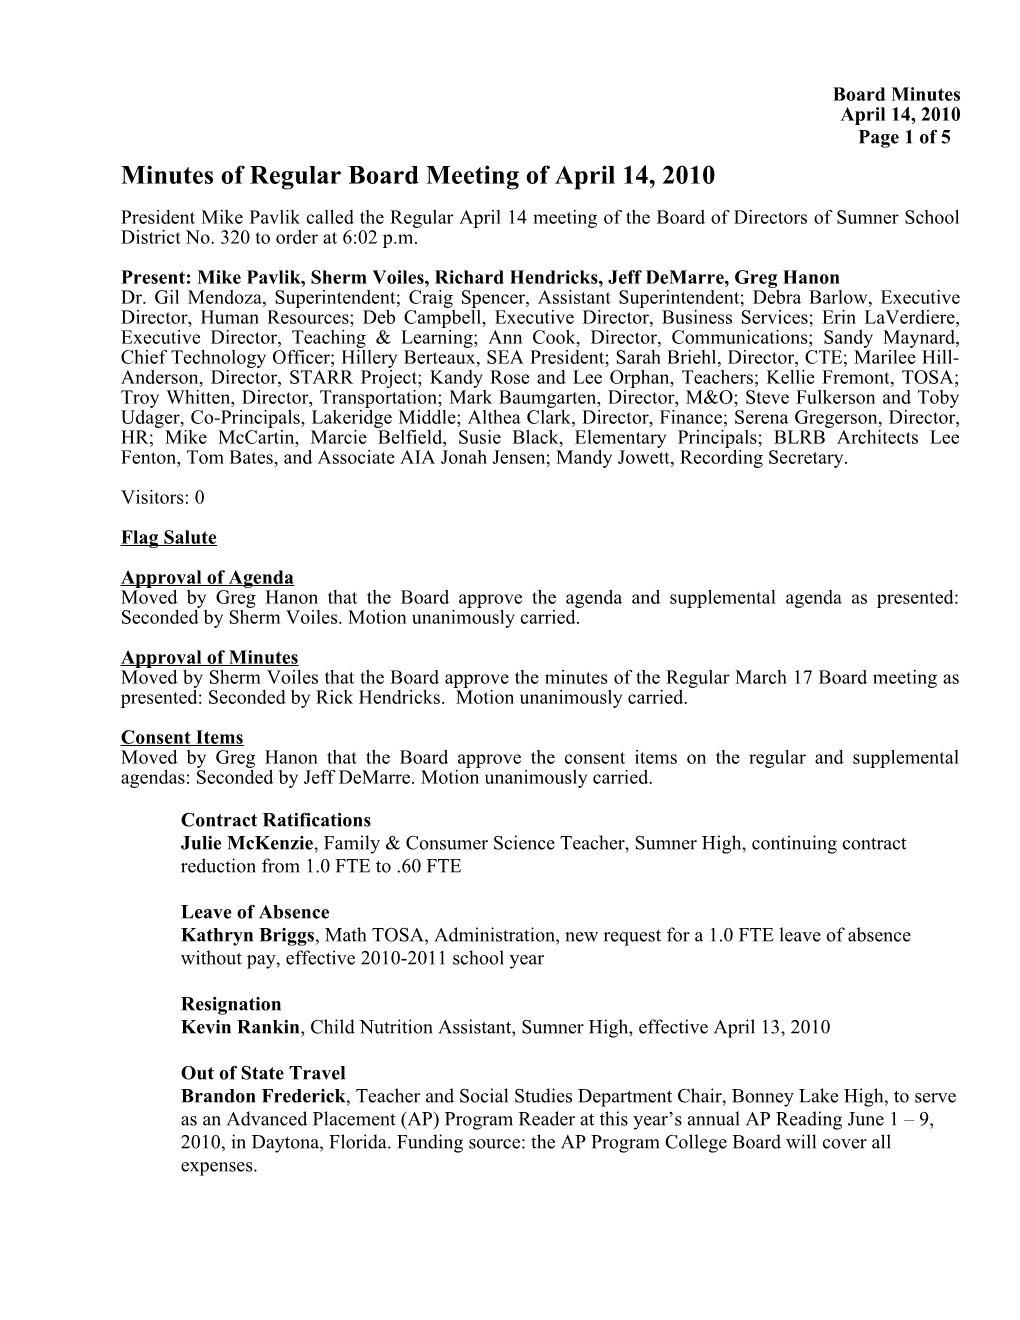 Minutes of Regular Board Meeting of April 14, 2010